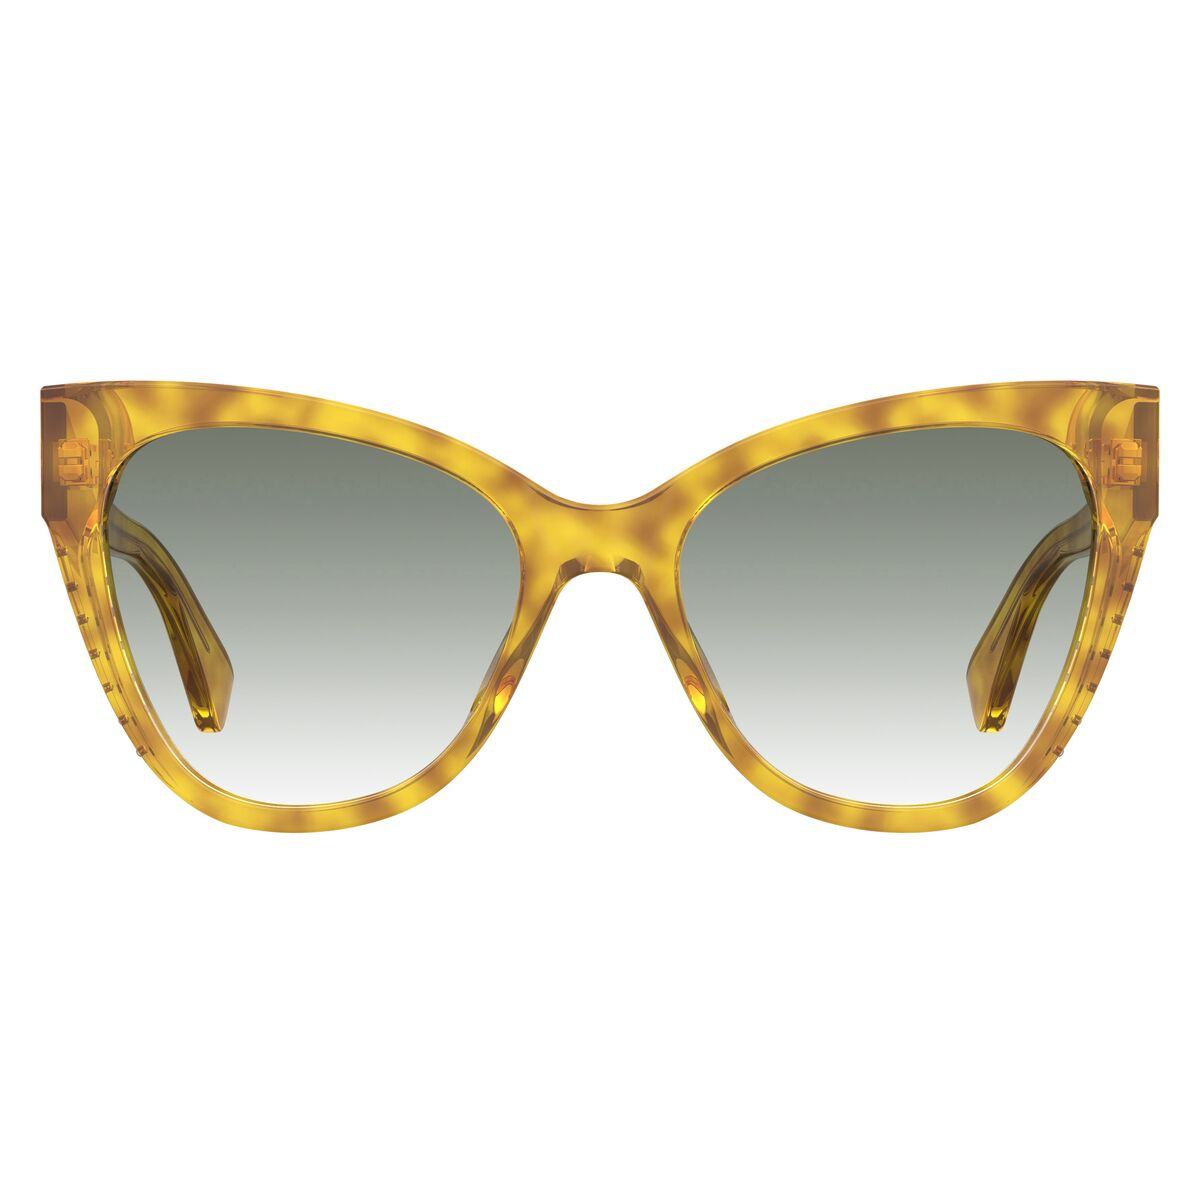 Kaufe Damensonnenbrille Moschino MOS056-S-XDP-9K bei AWK Flagship um € 83.00